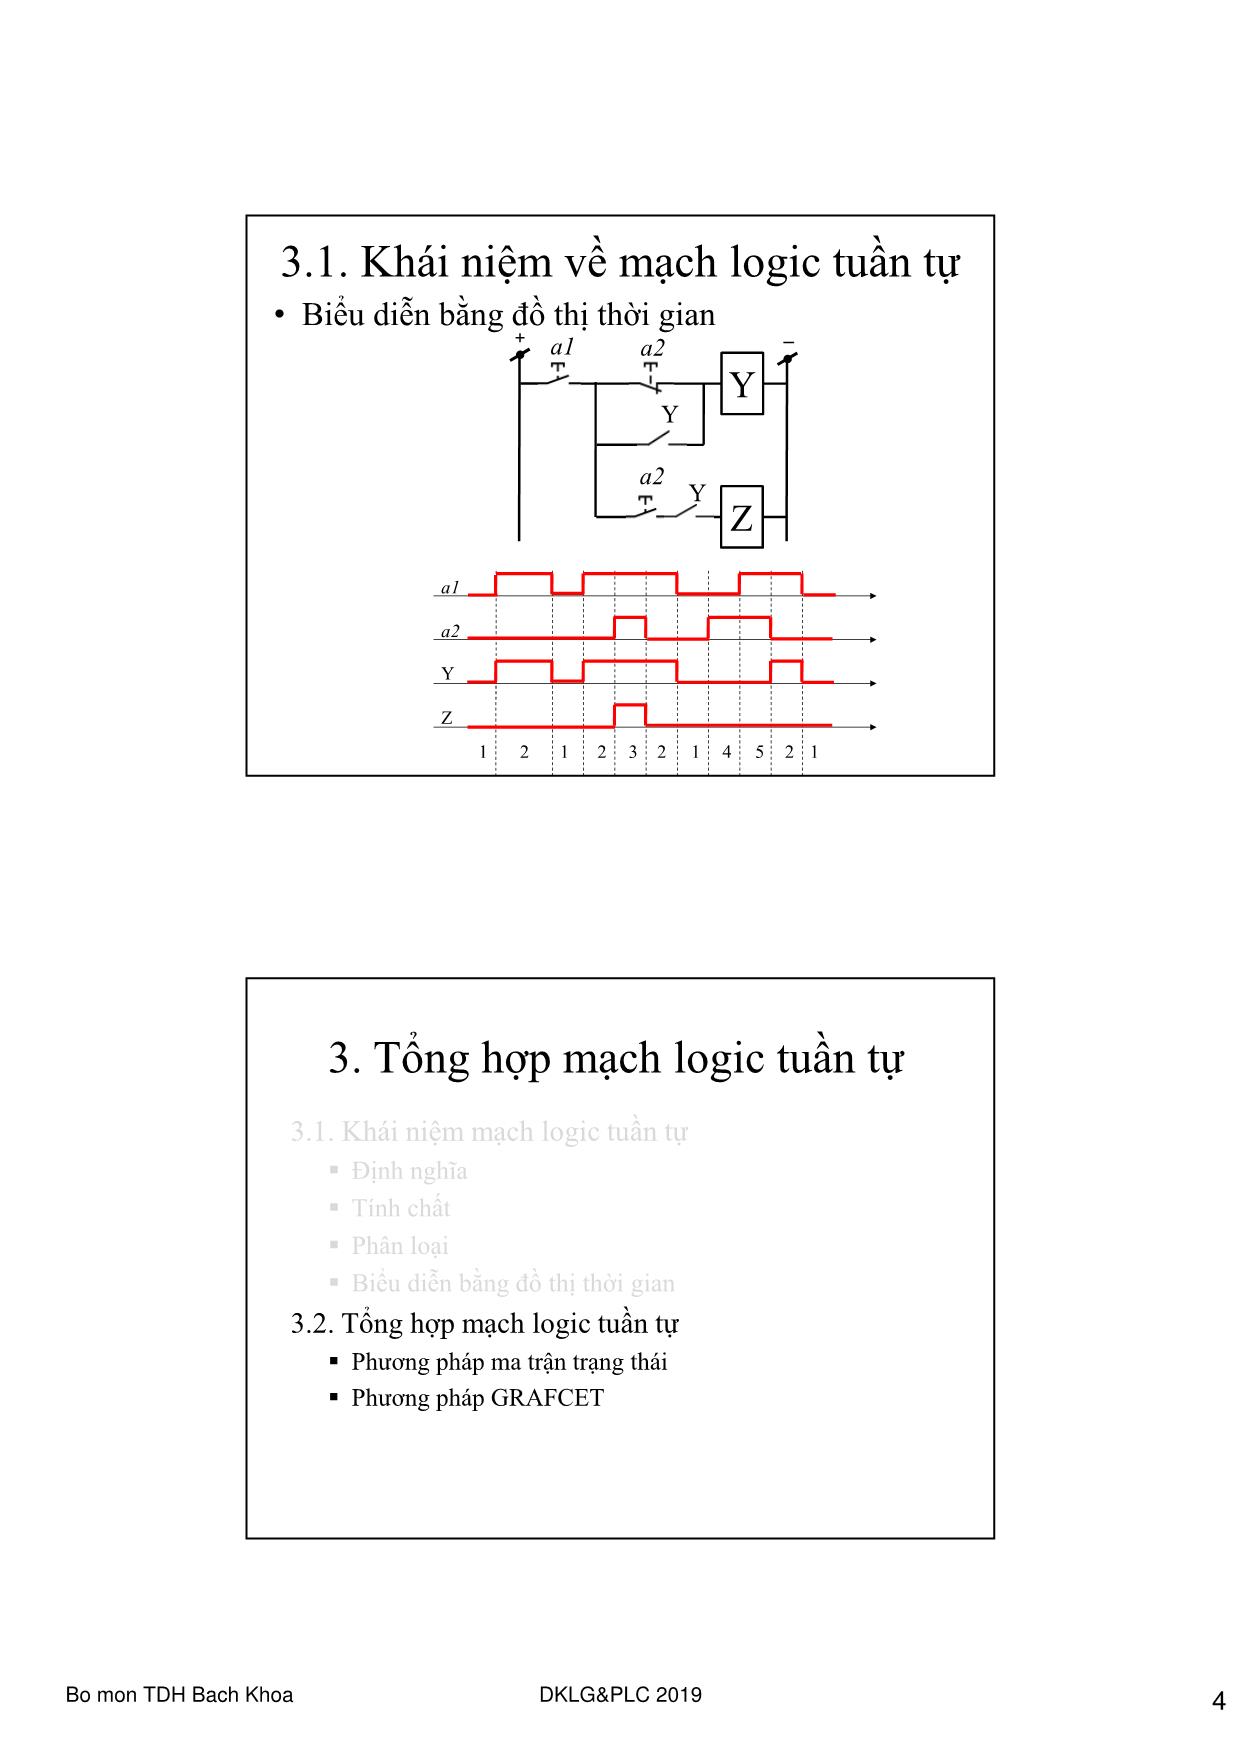 Bài giảng Điều khiển Logic và PLC - Chương 3: Tổng hợp mạch logic tuần tự trang 4